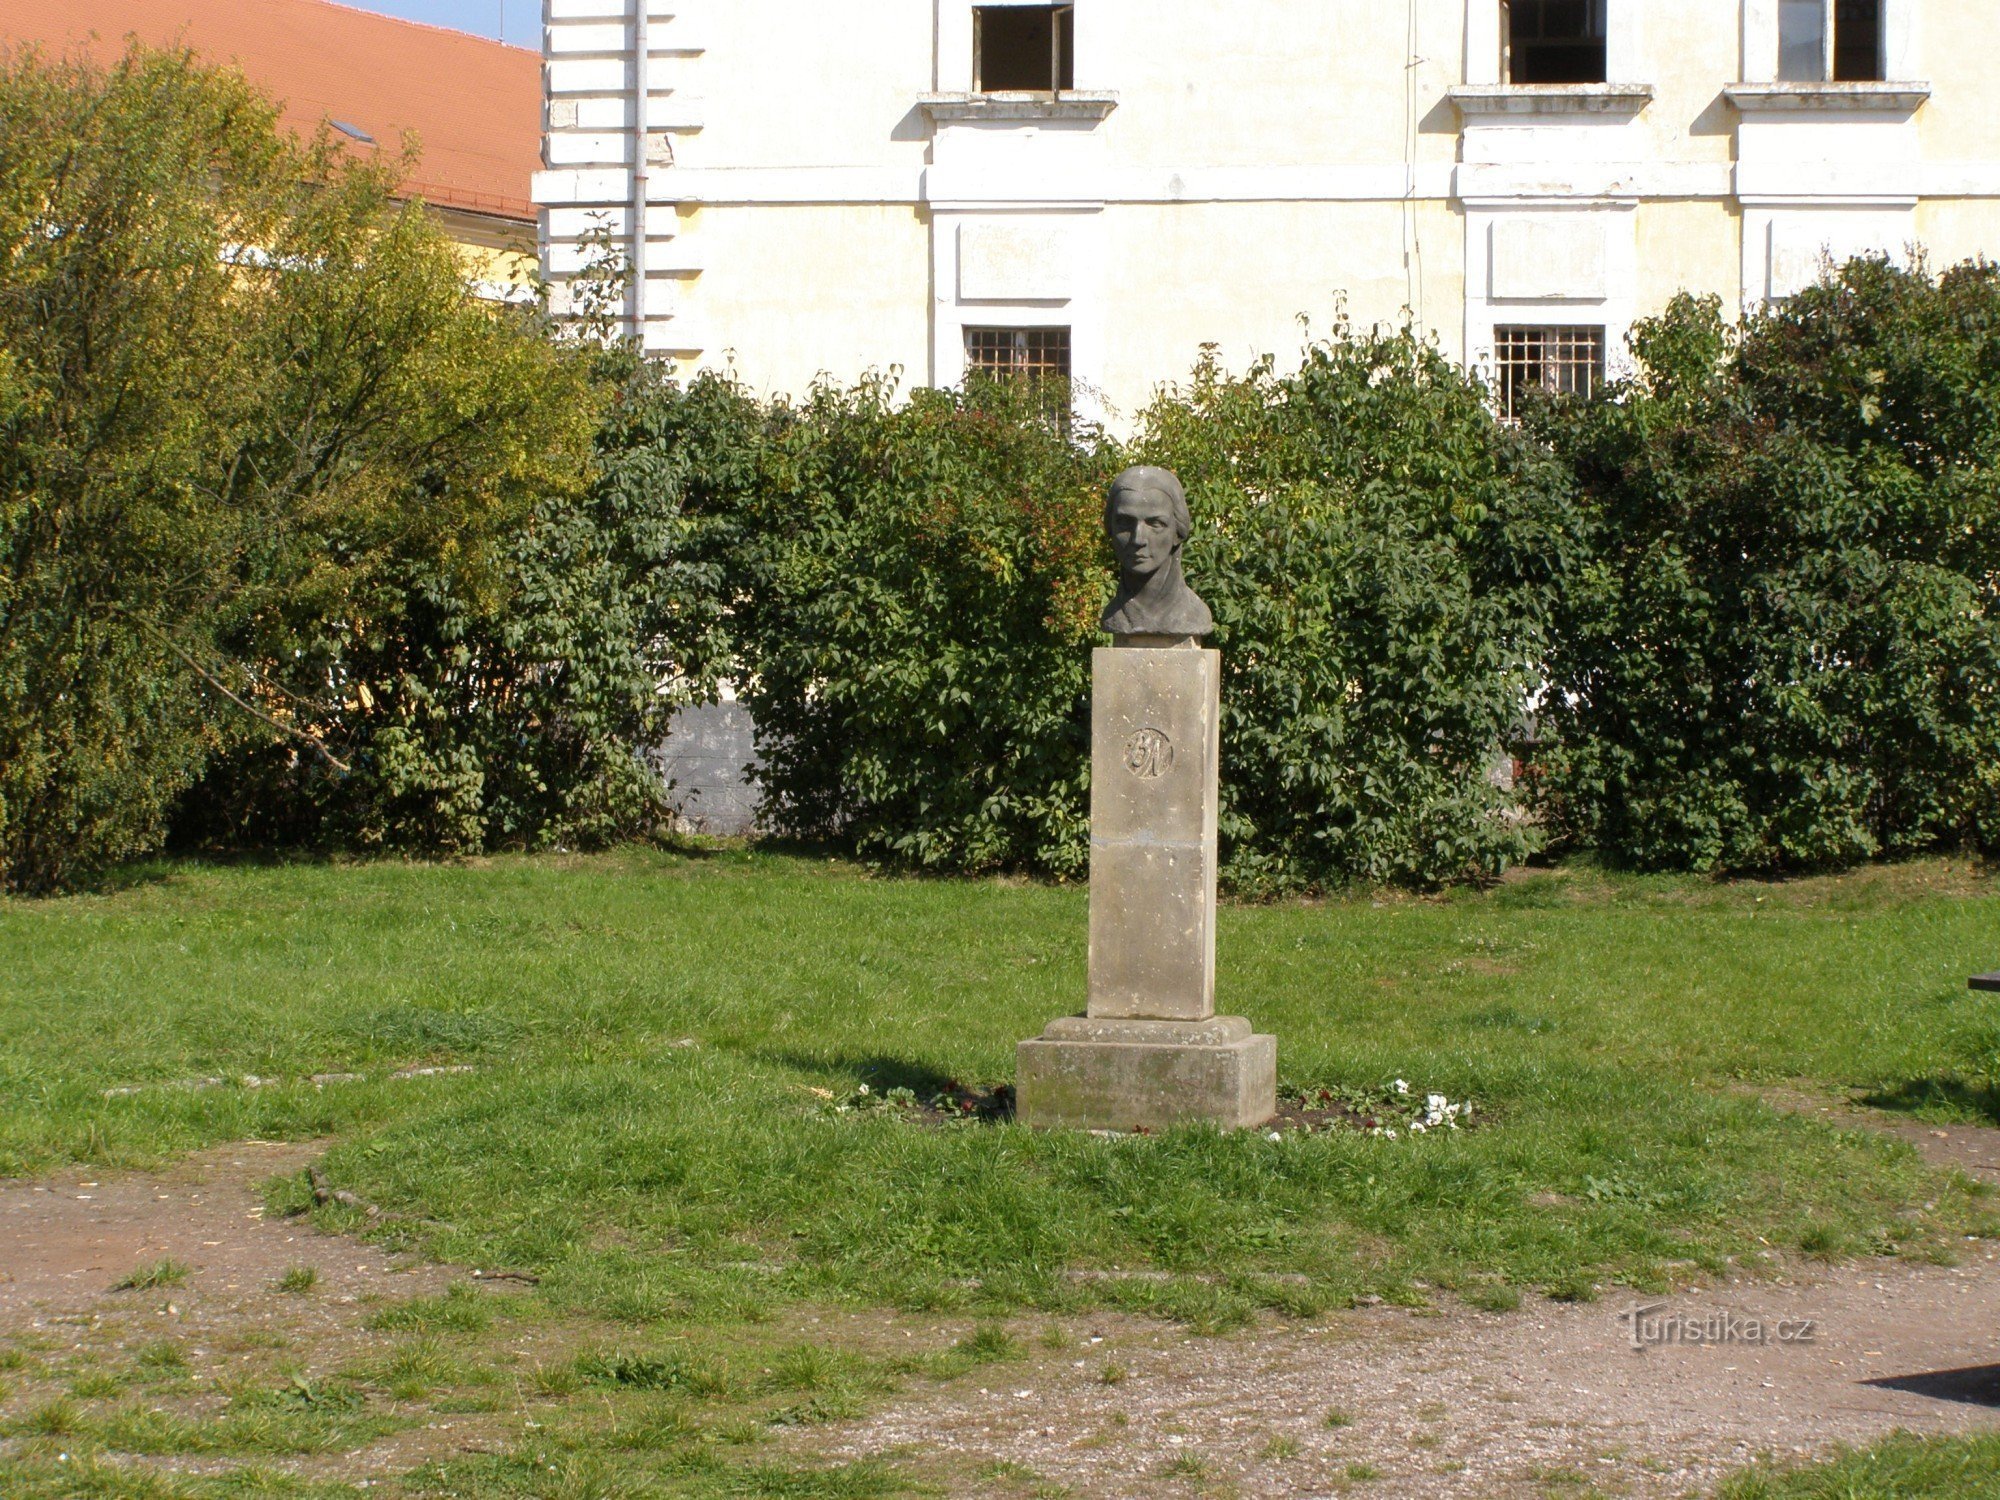 Josefov - monument voor Bozena Němcová